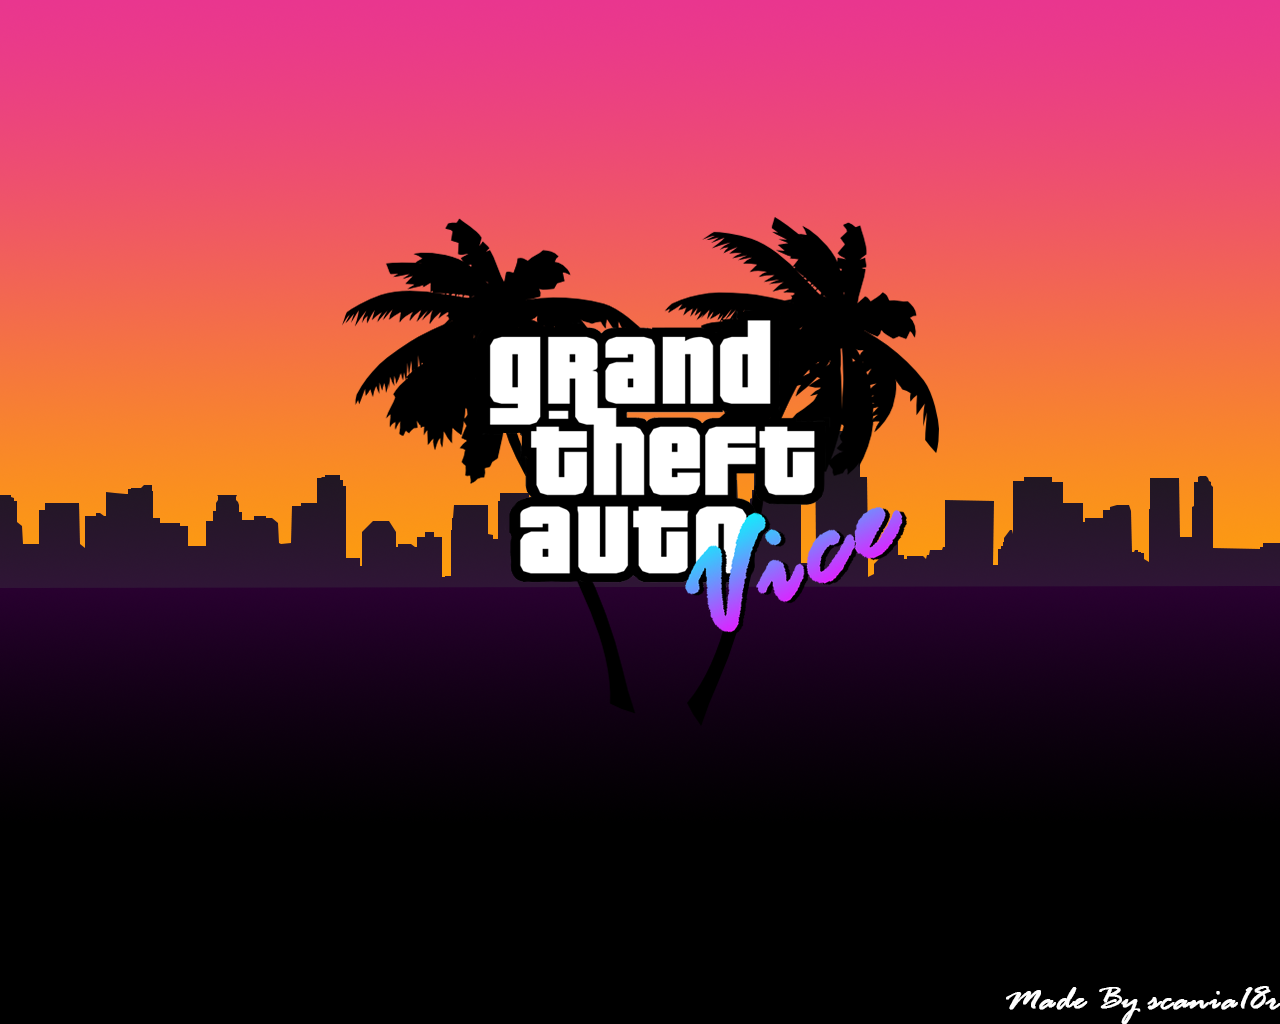 Grand Theft Auto Vice City Fan Art by scaniafan on DeviantArt